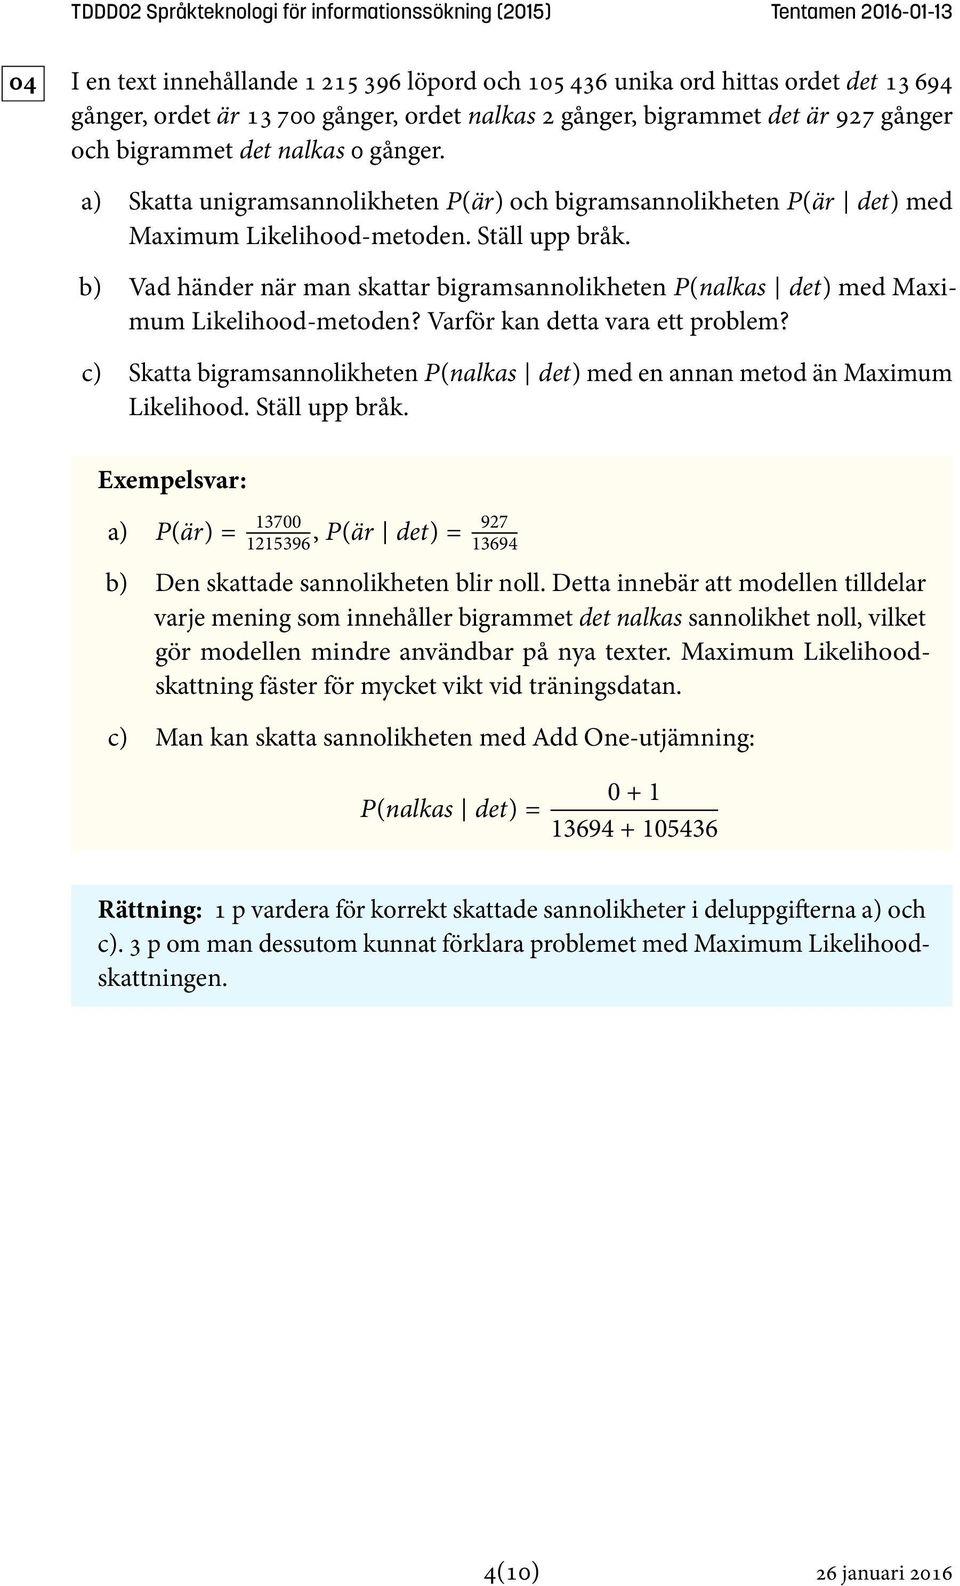 b) Vad händer när man skattar bigramsannolikheten P(nalkas det) med Maximum Likelihood-metoden? Varför kan detta vara ett problem?